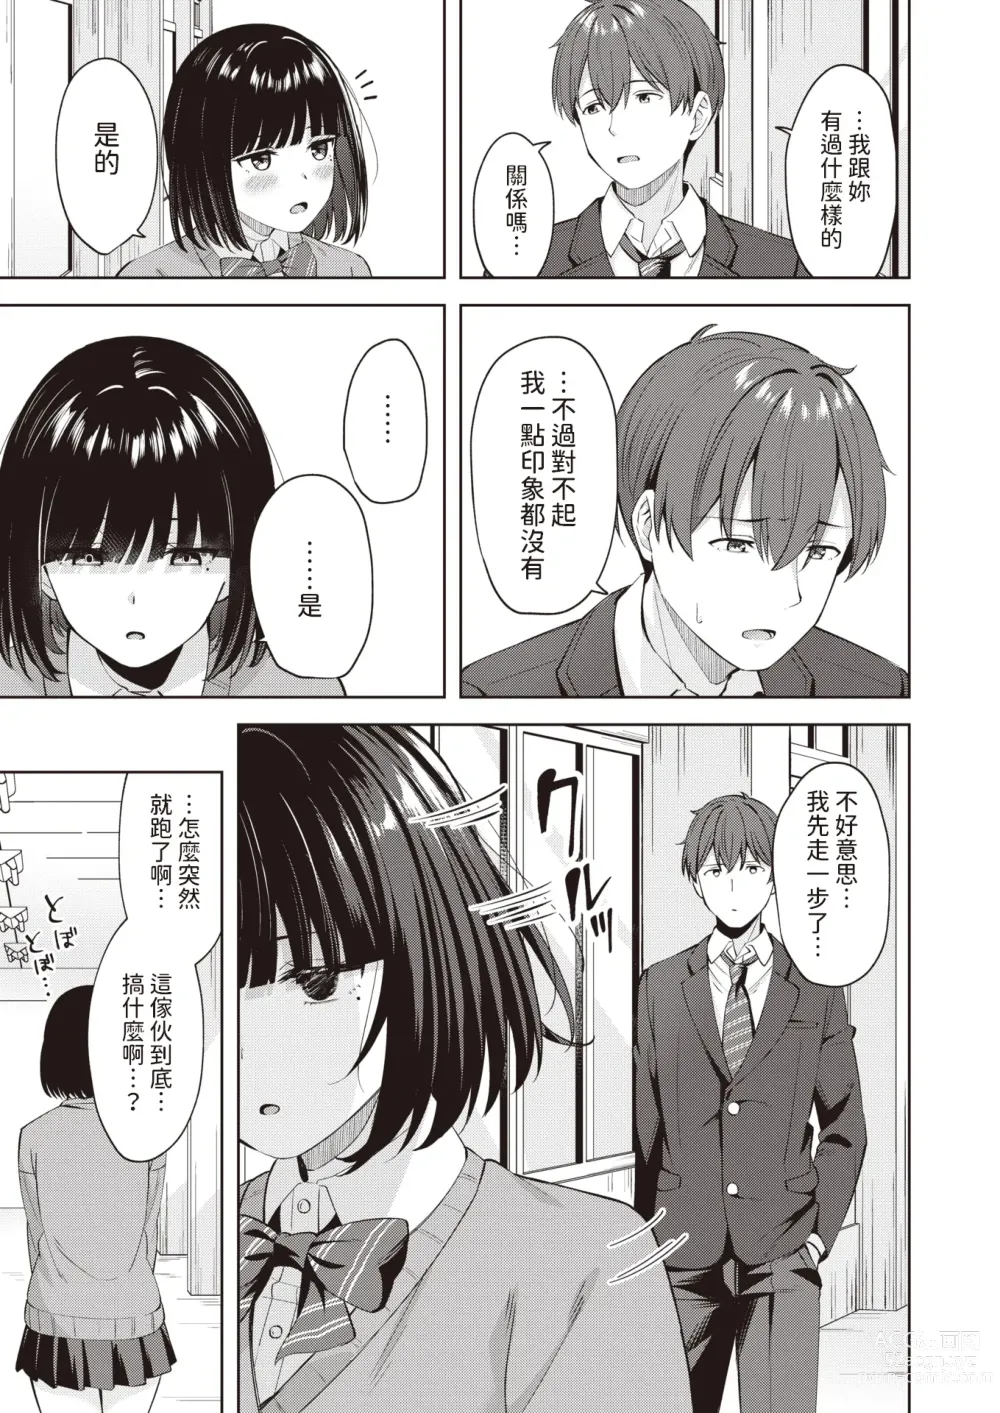 Page 5 of manga Sweet Stalking